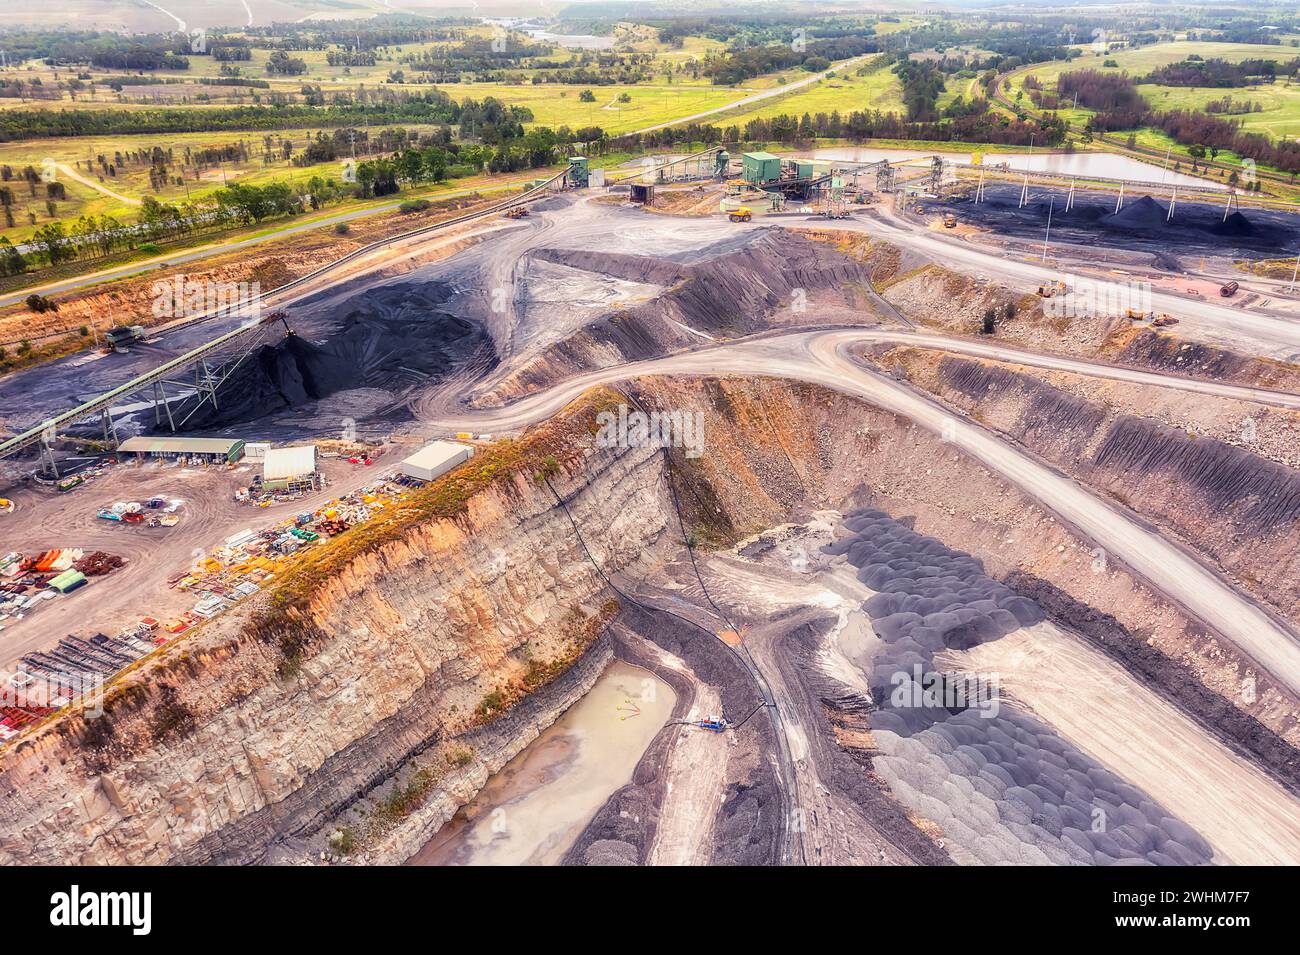 Miniera di carbone nero nel New England Hunter Valley del nuovo Galles del Sud, Australia - paesaggio industriale aereo. Foto Stock